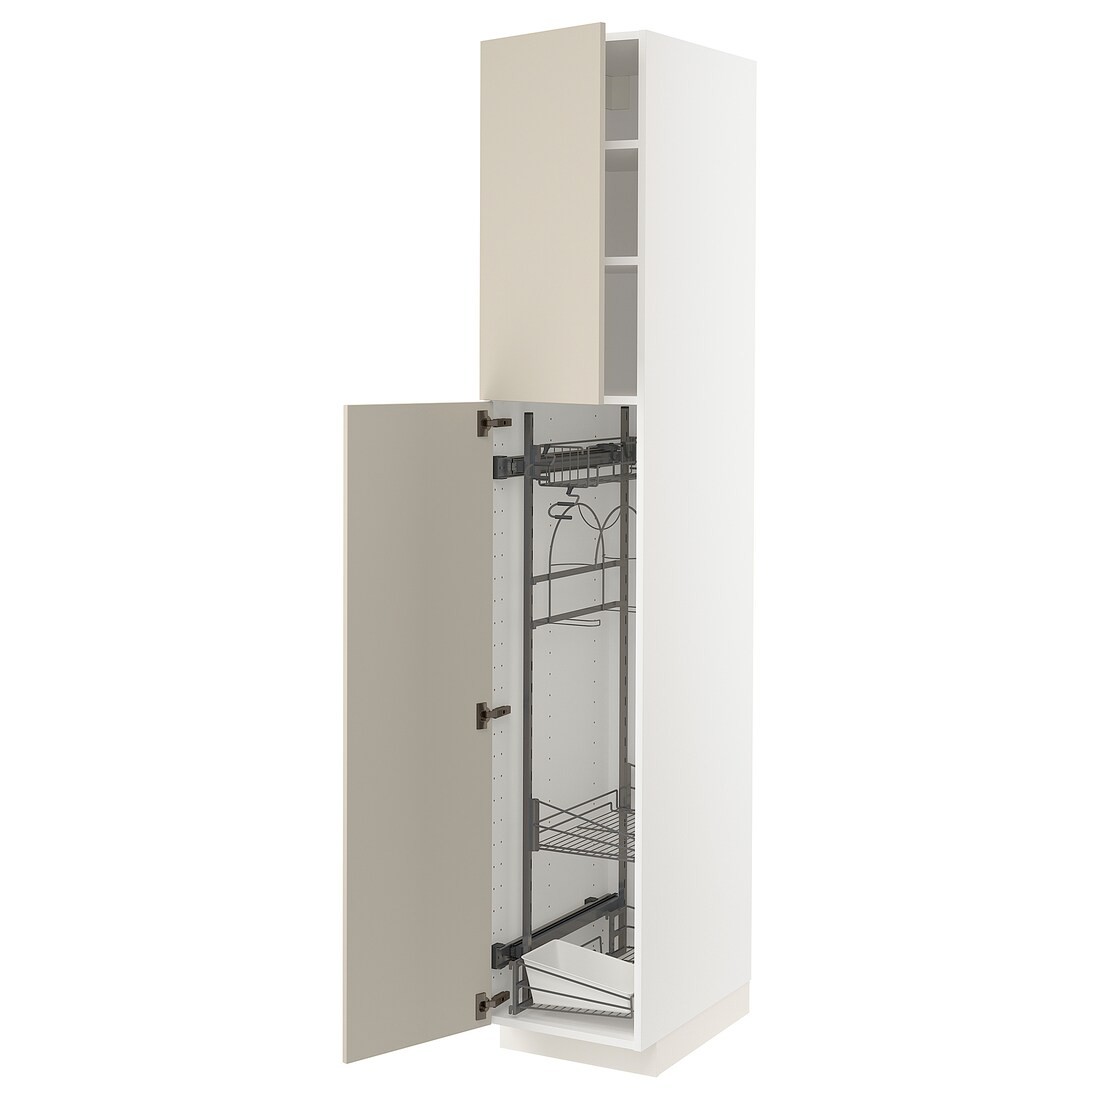 METOD МЕТОД Высокий шкаф с отделением для аксессуаров для уборки, белый / Havstorp бежевый, 40x60x220 см